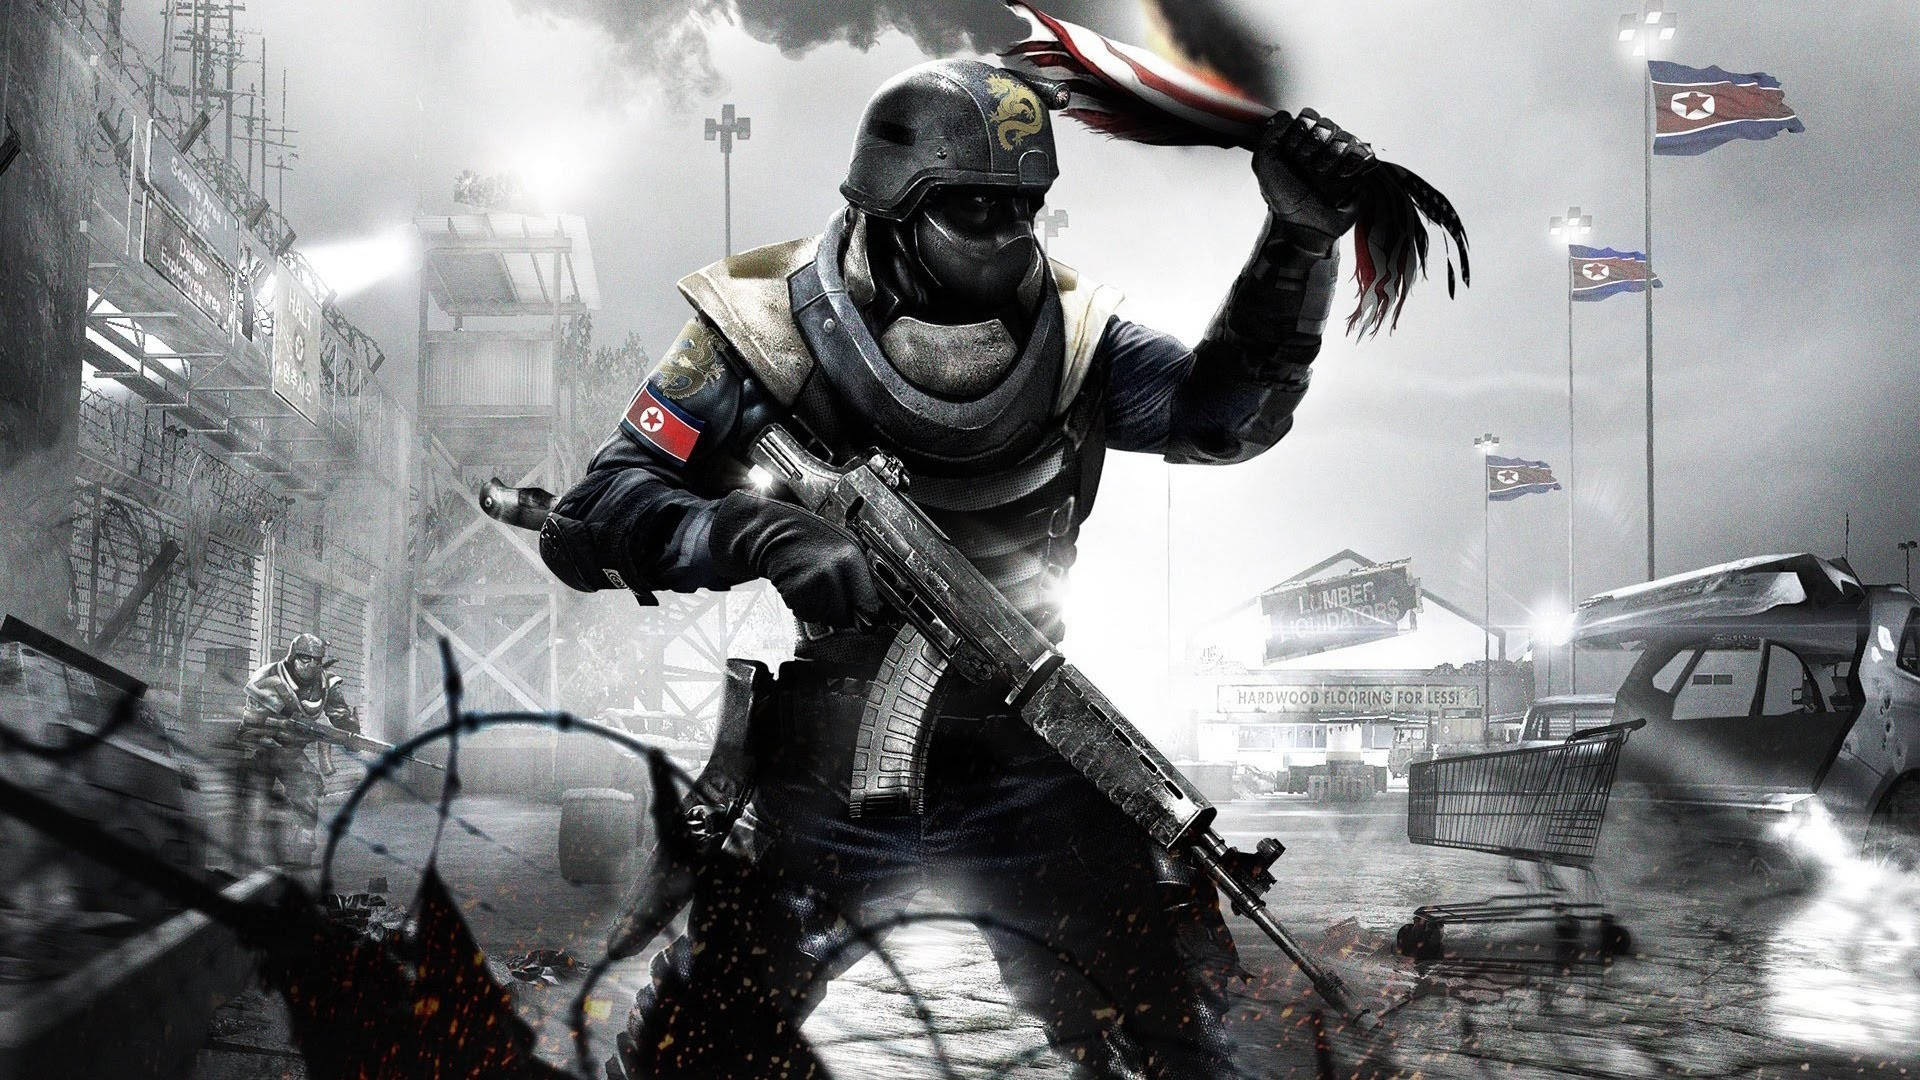 Sick Combat Squad Leader Wallpaper